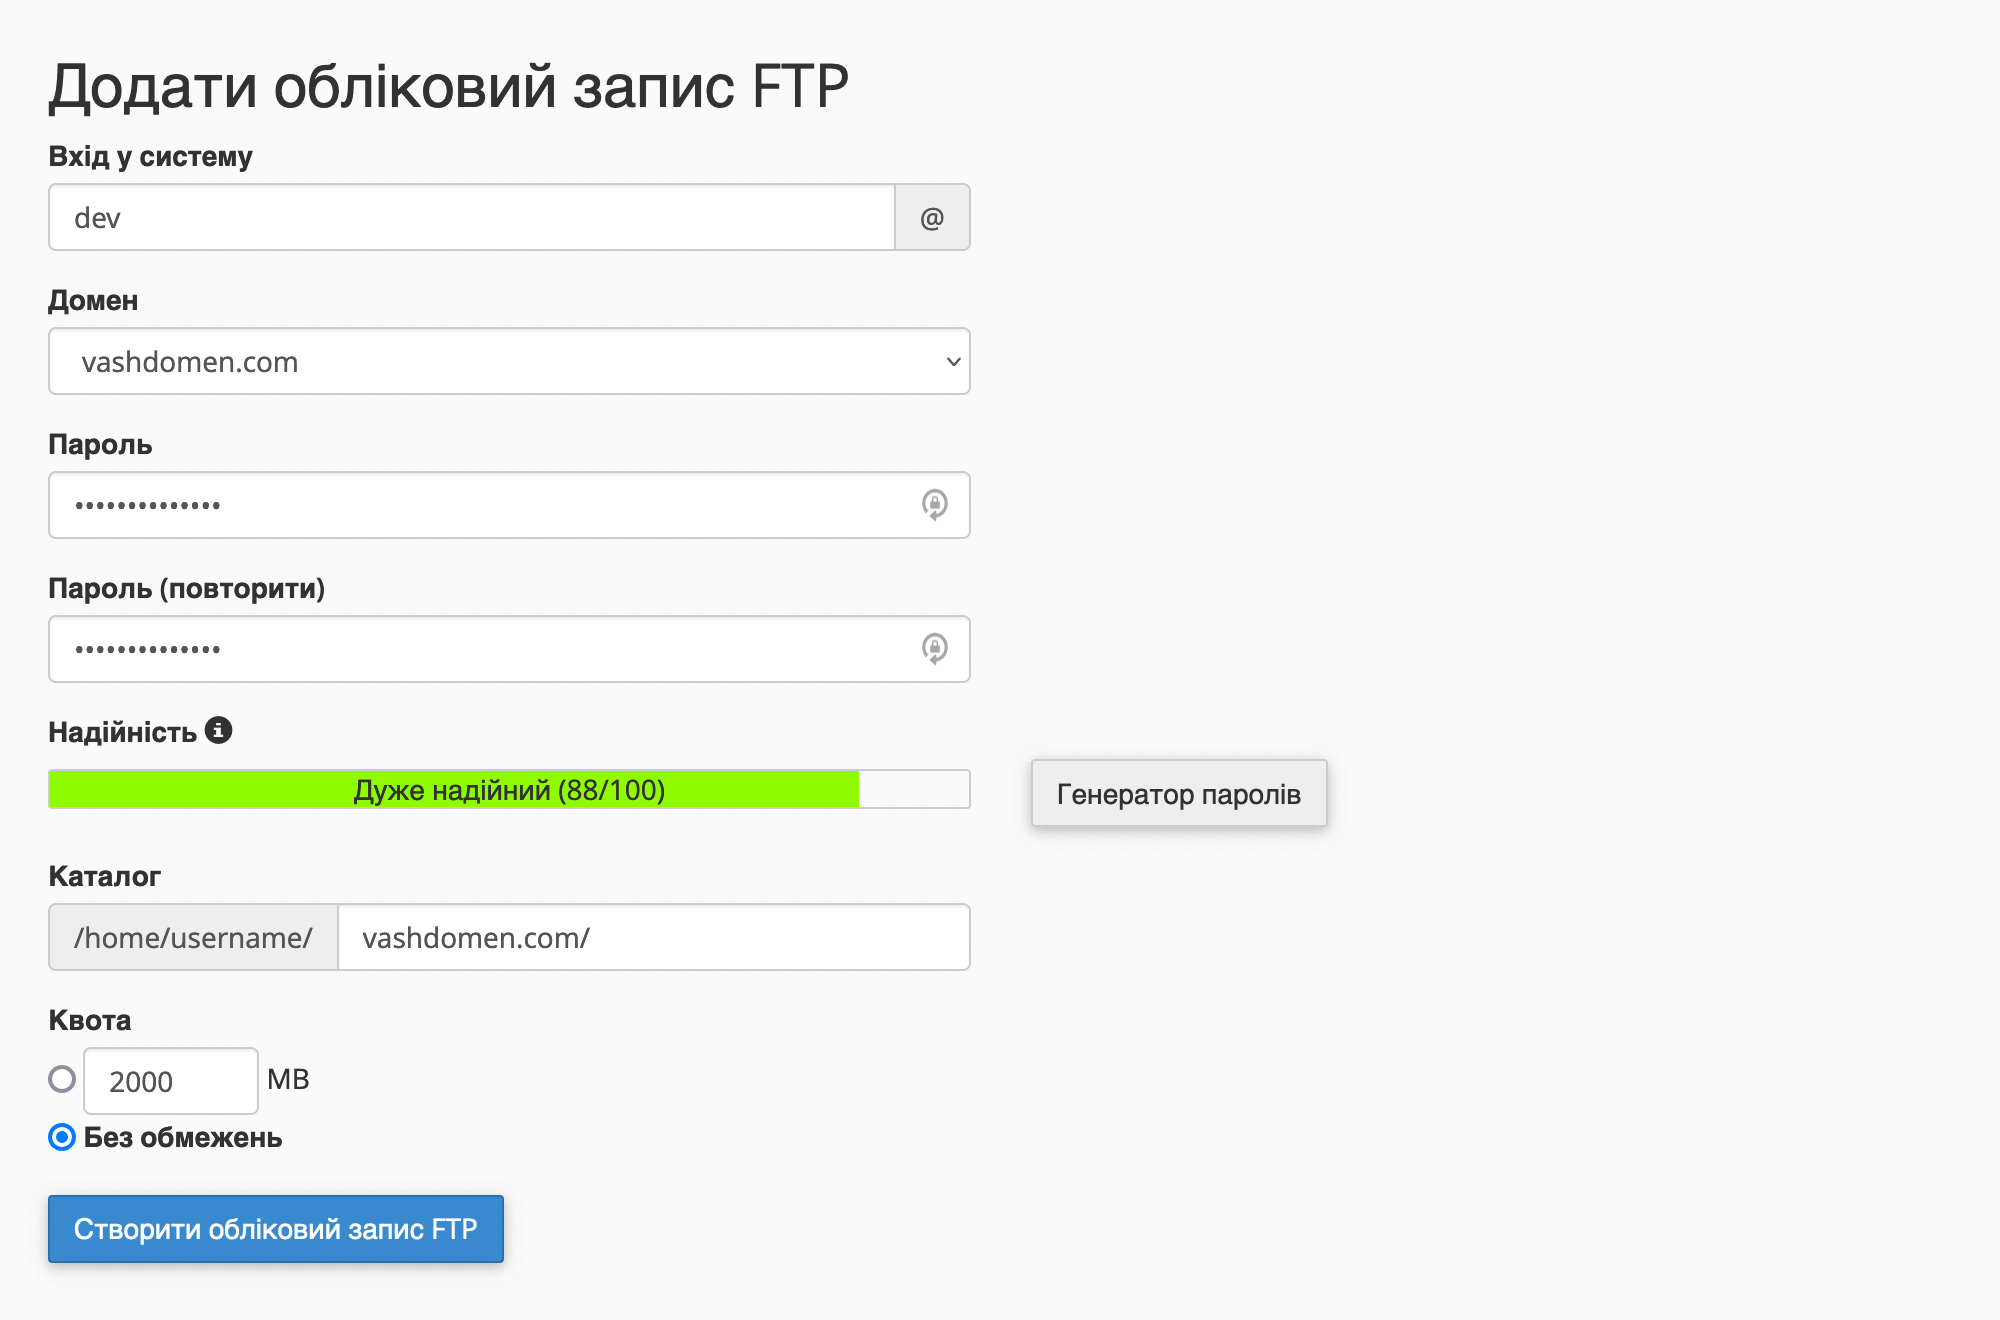 Інтерфейс «Додати обліковий запис FTP» у cPanel